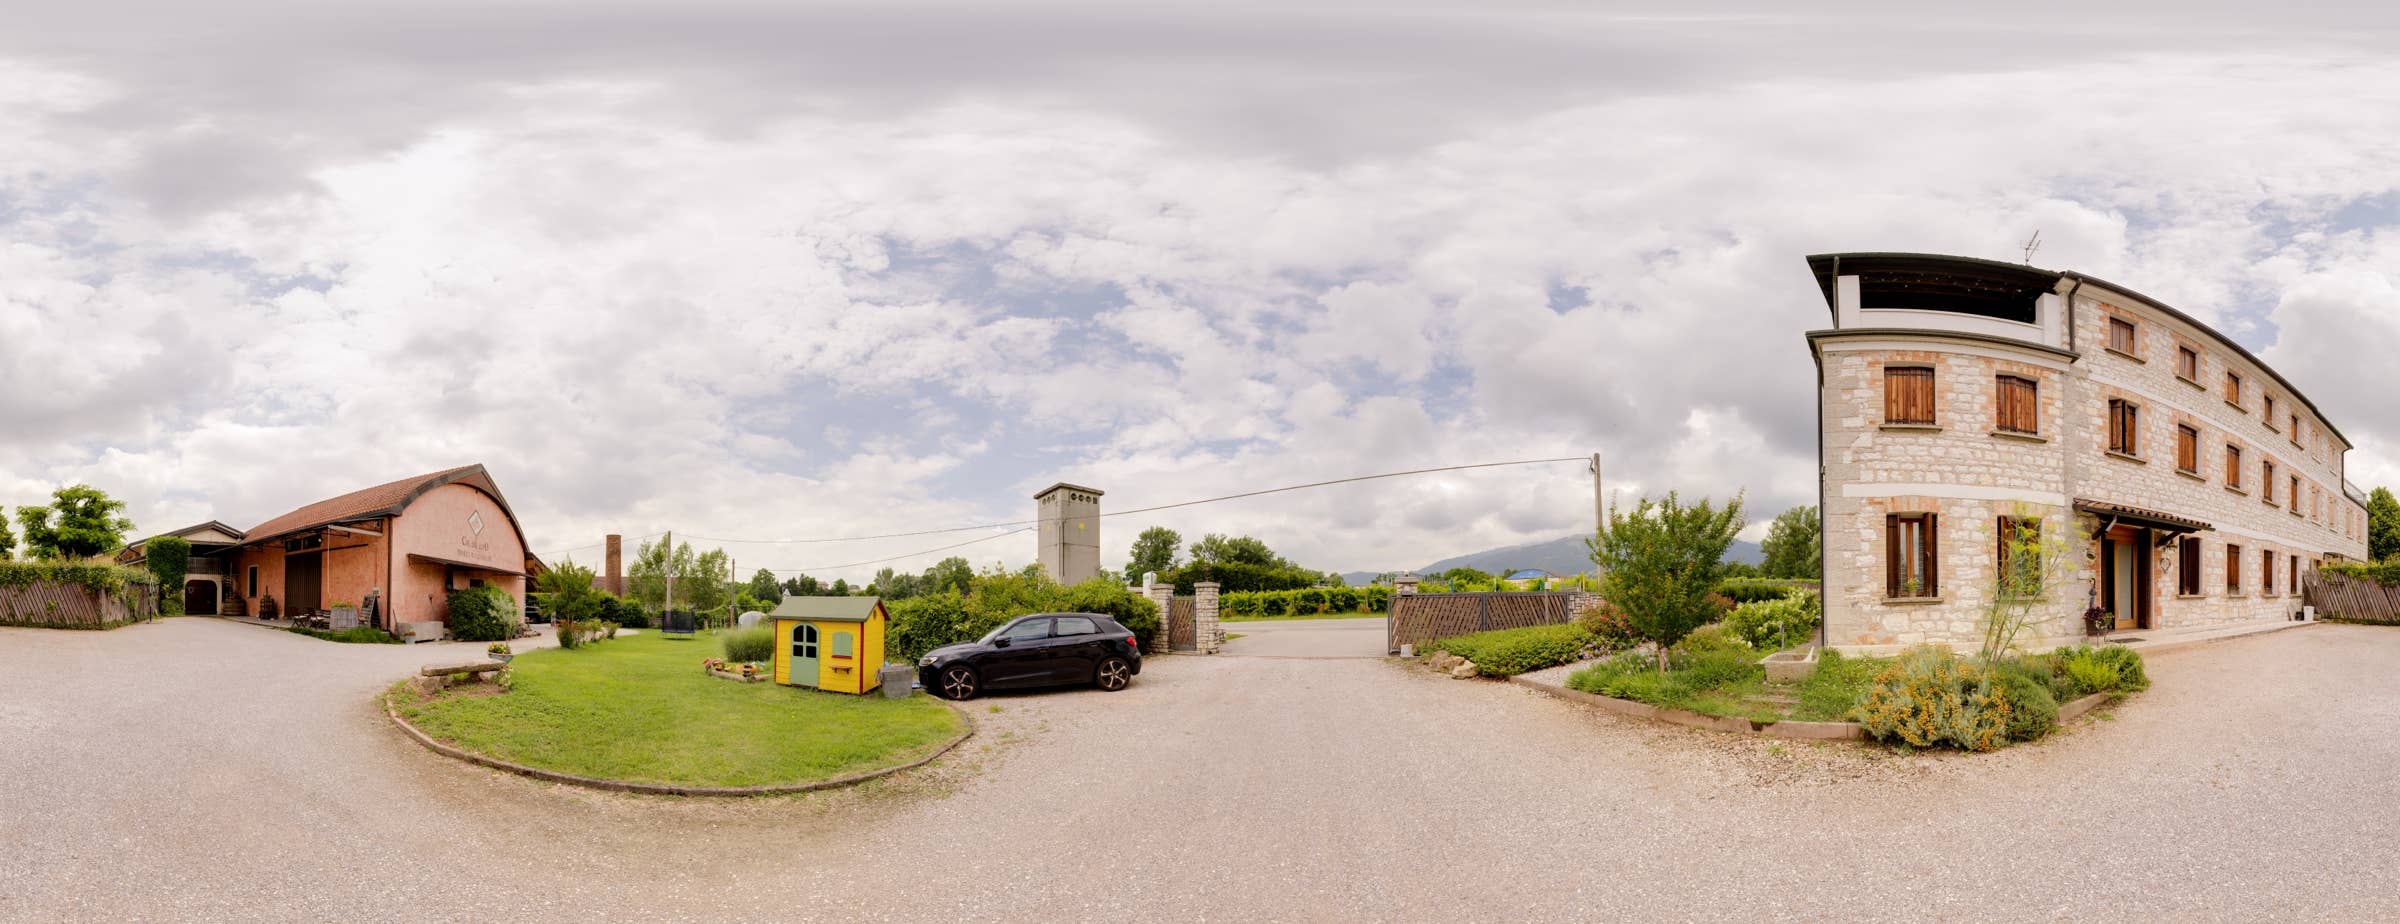 Panoramska slika od 360° prikazuje dvorište vinarije Col del Lupo.